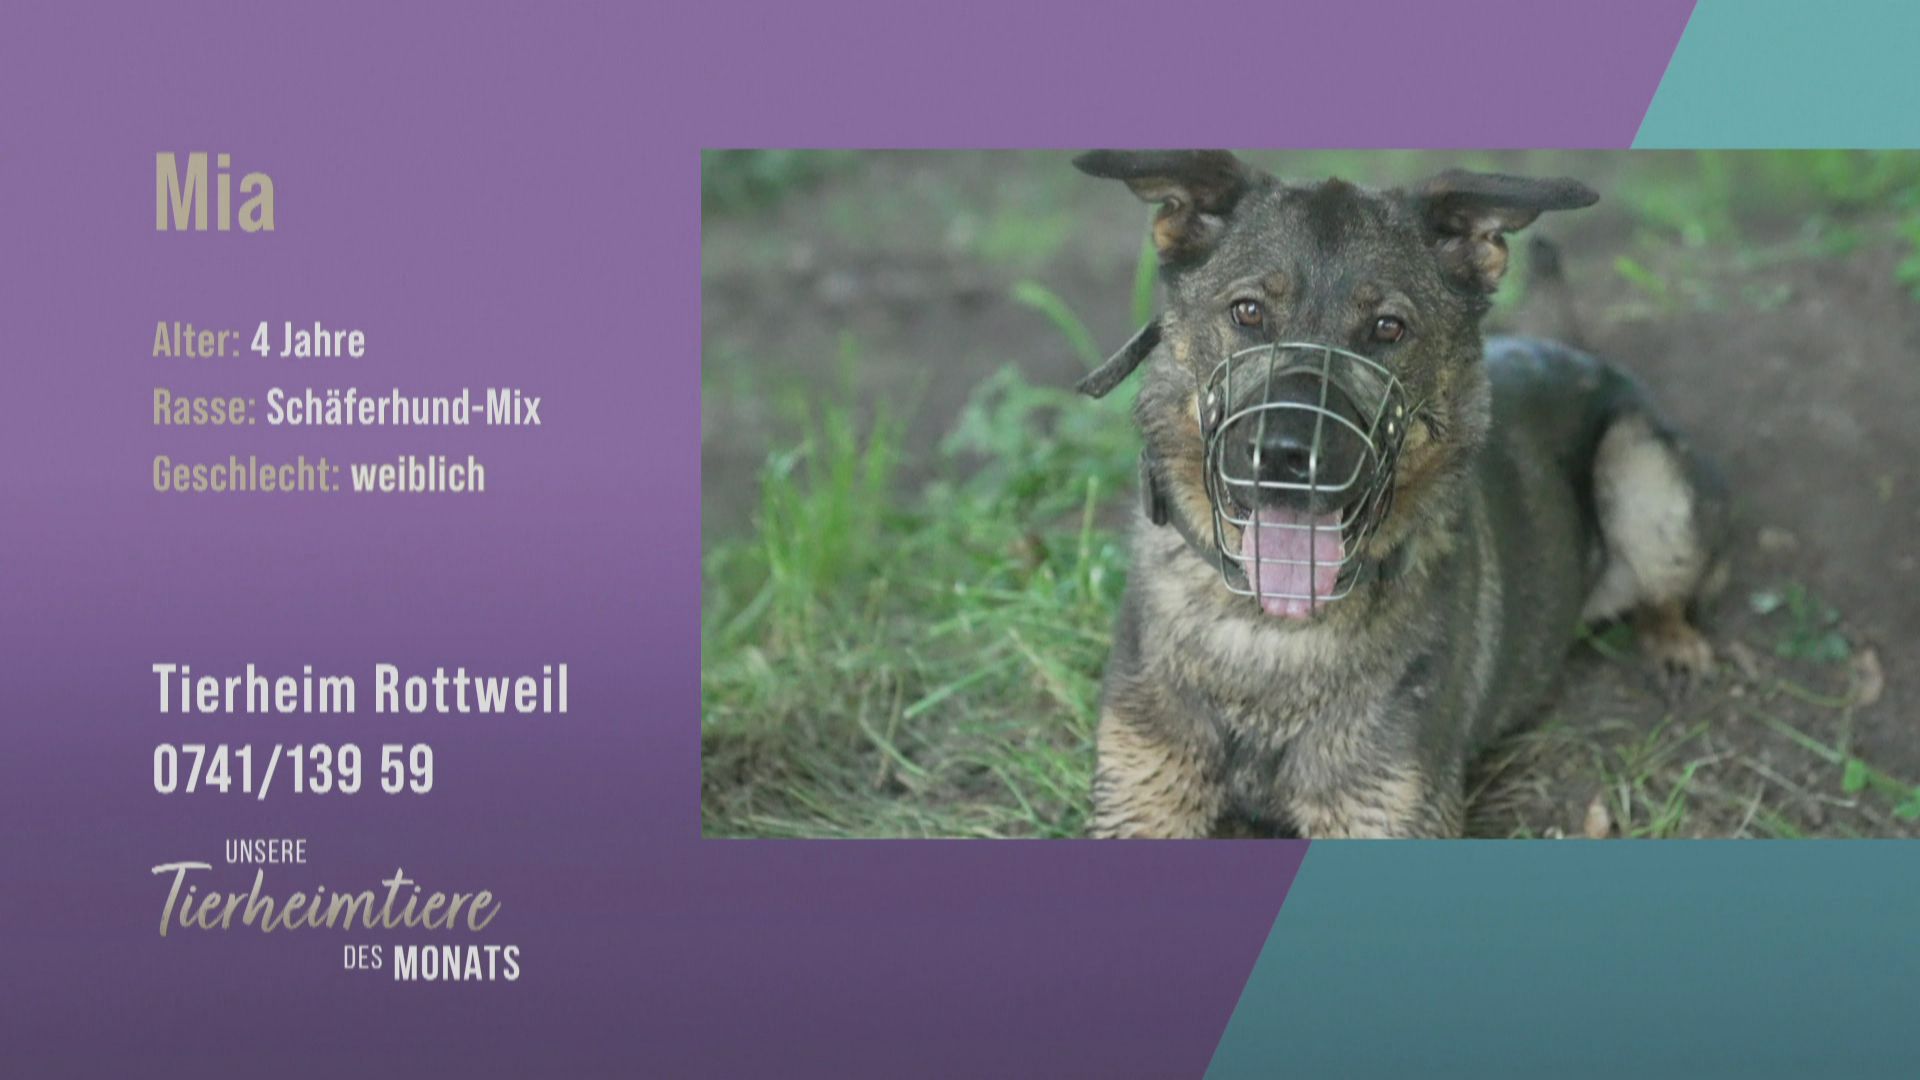 Für konsequente Hundefreunde: Schäferhund-Mix Mia